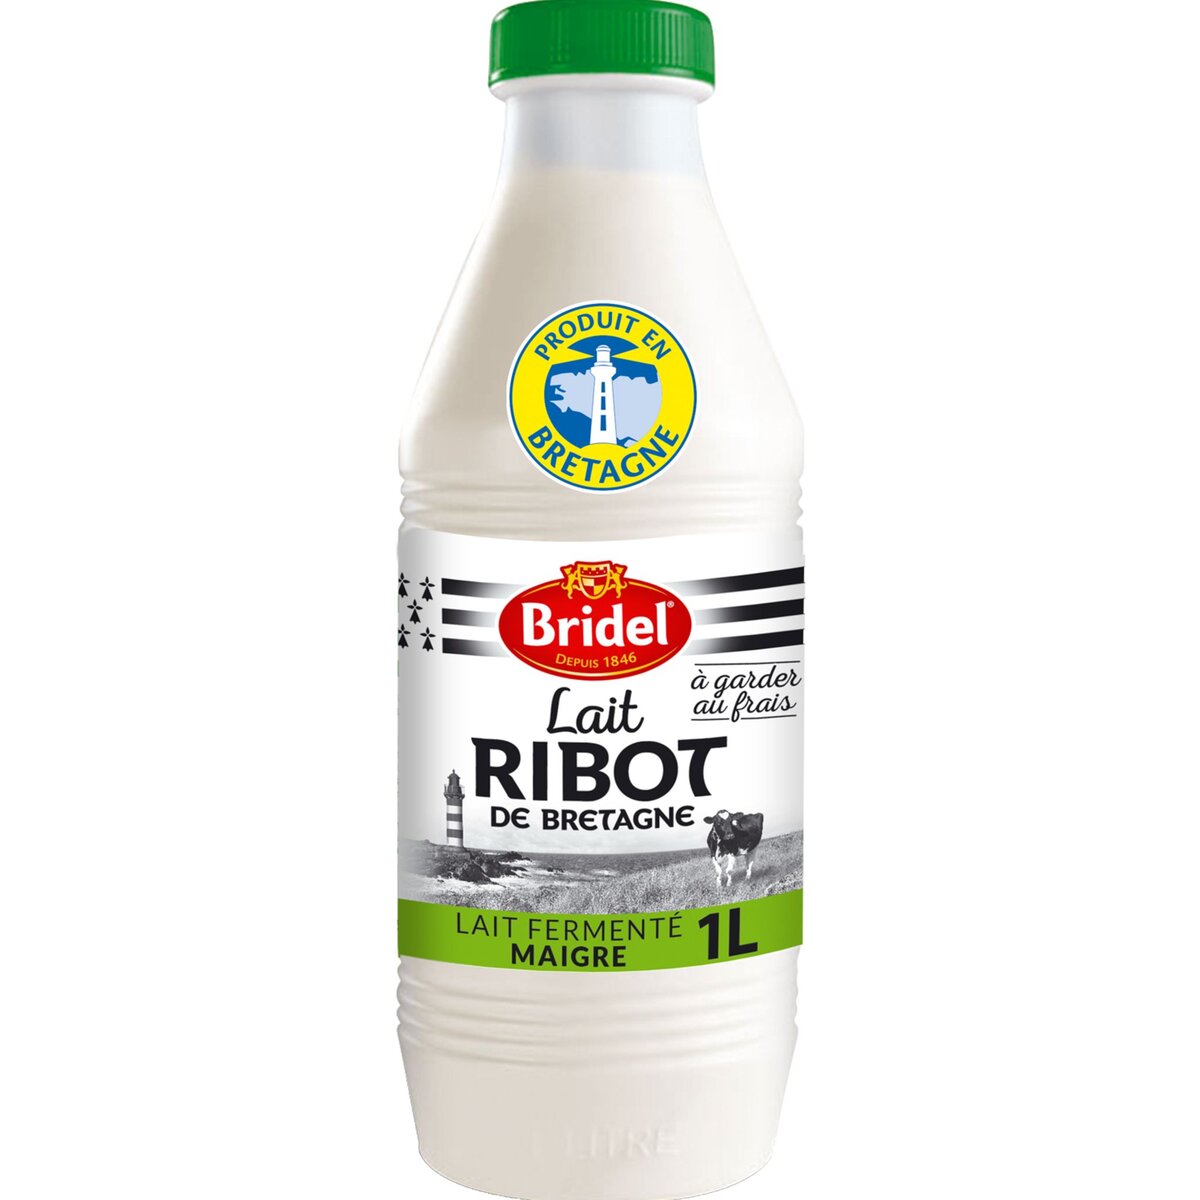 BRIDEL Bridel Lait Ribot fermenté maigre  bouteille de 1 litre 1L